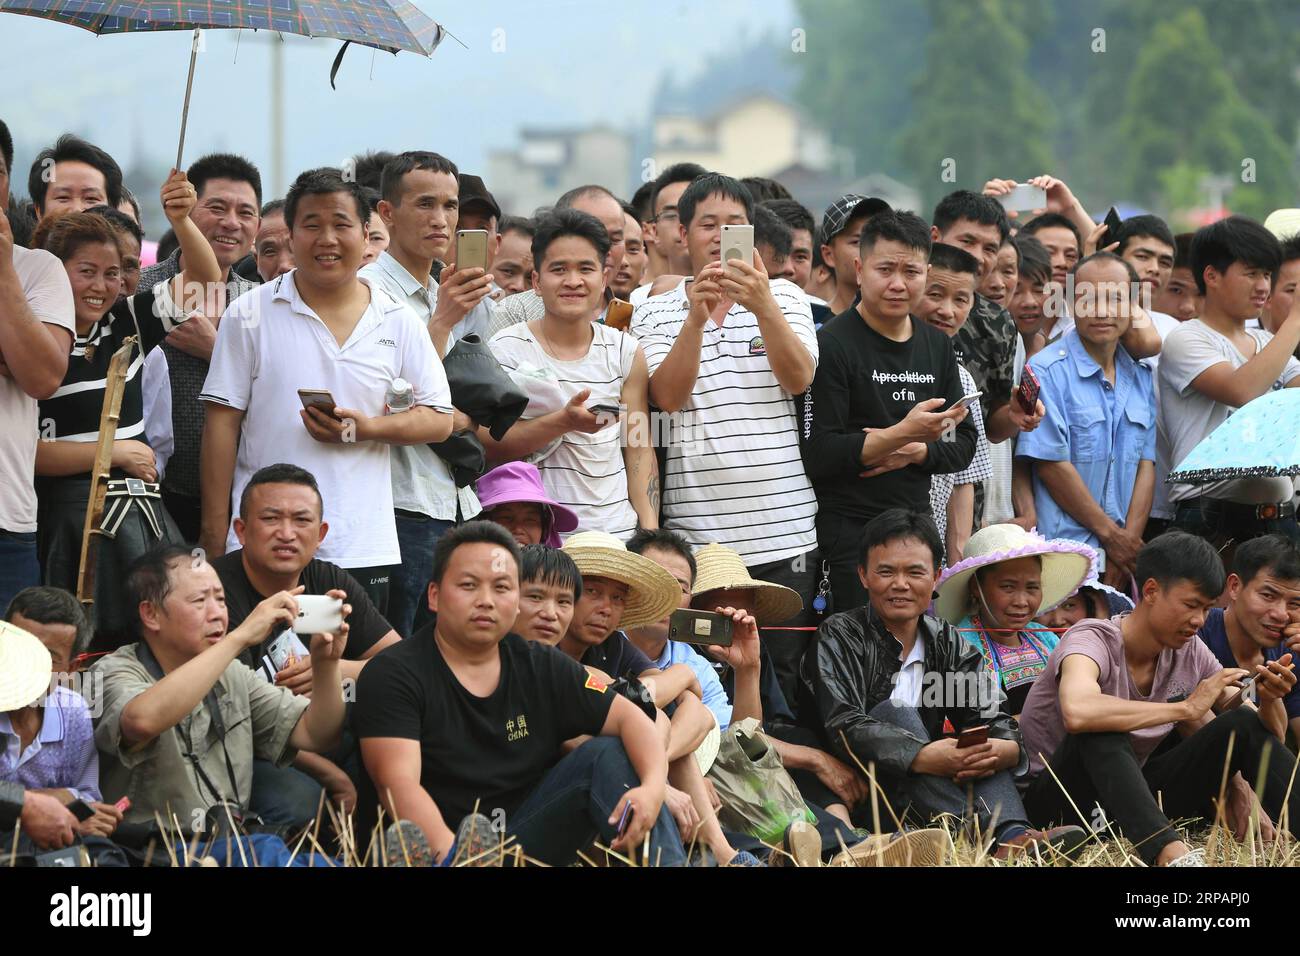 (190516) -- SIZHAI VILLAGE, 16. Mai 2019 (Xinhua) -- Dorfbewohner beobachten Ringwettbewerbe beim jährlichen traditionellen Ringfestival im Dorf Sizhai der Gemeinde Shuangjiang, Liping County, Miao-Dong Autonome Präfektur Qiandongnan, Provinz Guizhou im Südwesten Chinas, 19. April 2019. Wu You hat traditionelles Wrestling der ethnischen Dong-Gruppe ausgeübt, das von seinem Vater Wu Fagui, einem ehemaligen Champion des traditionellen Wrestling-Wettbewerbs, trainiert wurde. Im April trat er als jüngster Spieler von Sizhai Village beim jährlichen Wrestling Festival an. Wu You's Vater Wu Fagui wurde auch von seinem Fathe trainiert Stockfoto